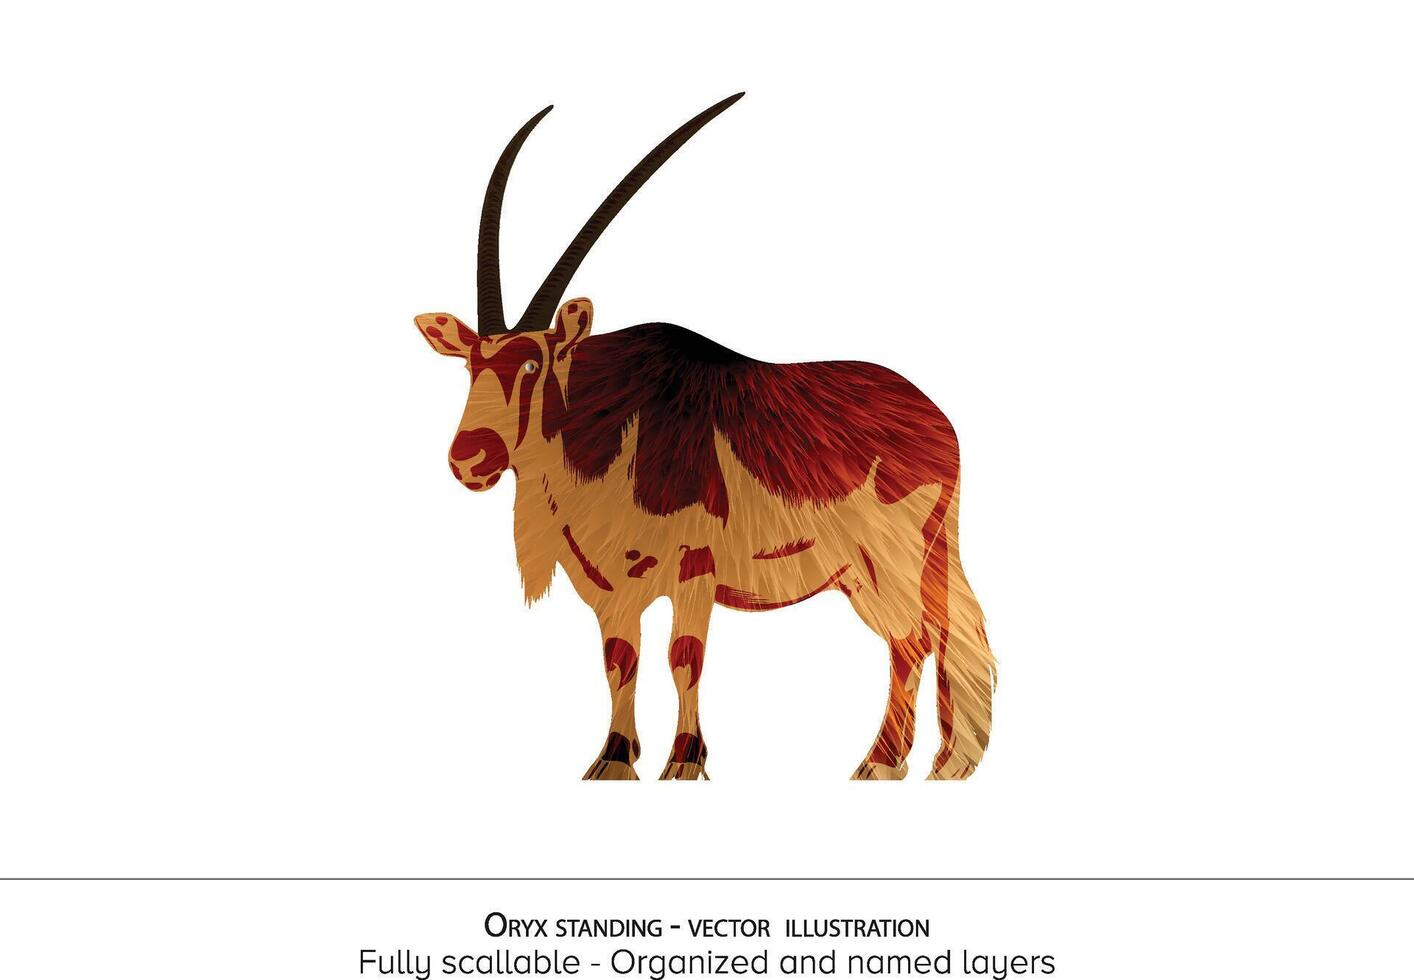 oryx staand illustratie. realistisch dier illustratie - georganiseerd lagen en animatie klaar . realistisch vos tekening vector